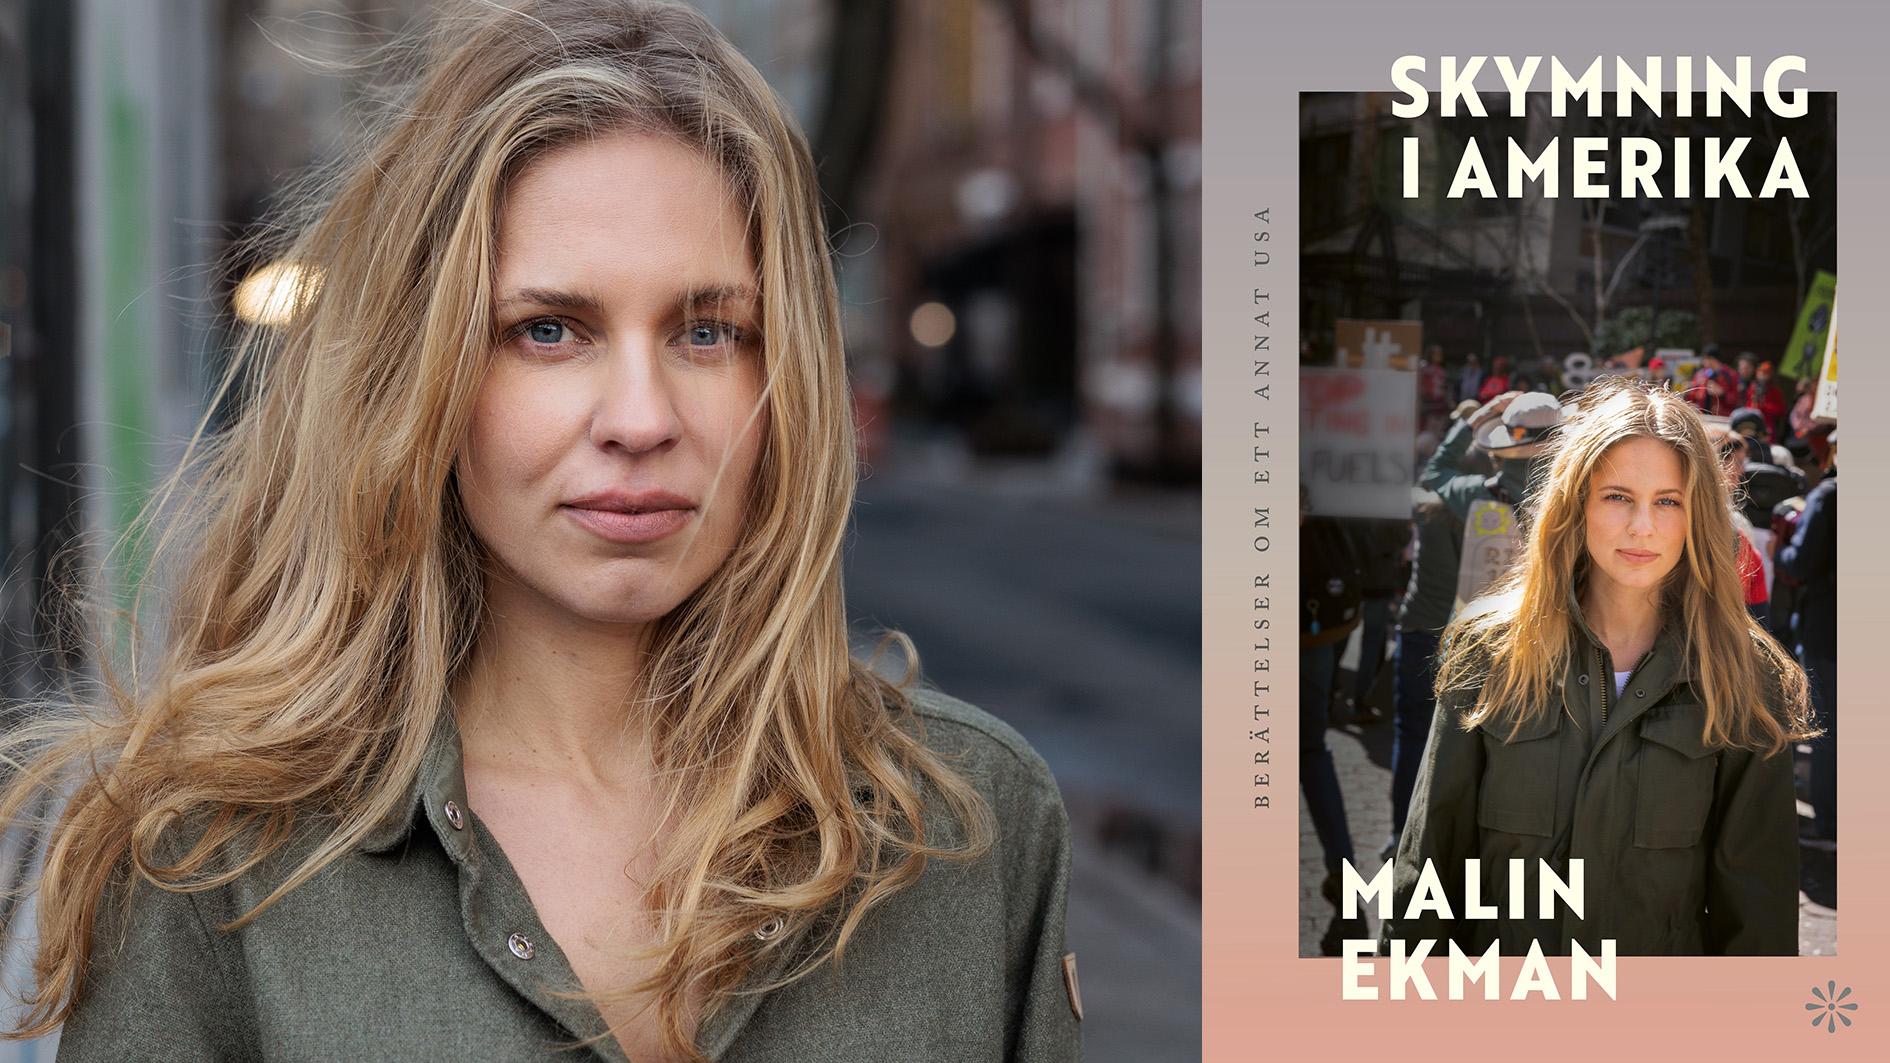 Malin Ekman (född 1987) är journalist och sedan 2019 Svenska Dagbladets USA-korrespondent. Hon är bosatt i New York och nu aktuell med reportageboken ”Skymning i Amerika”.